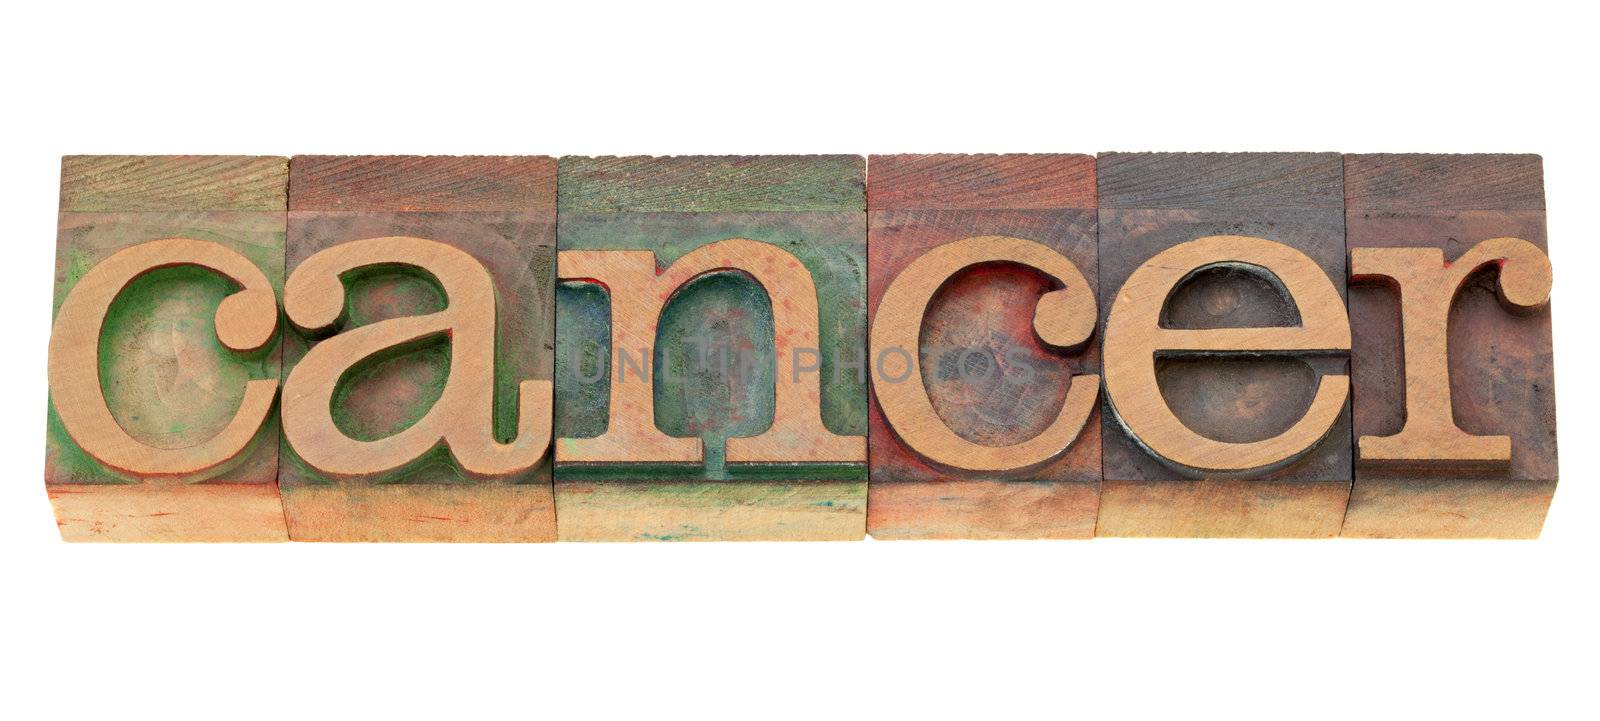 cancer word in letterpress type by PixelsAway